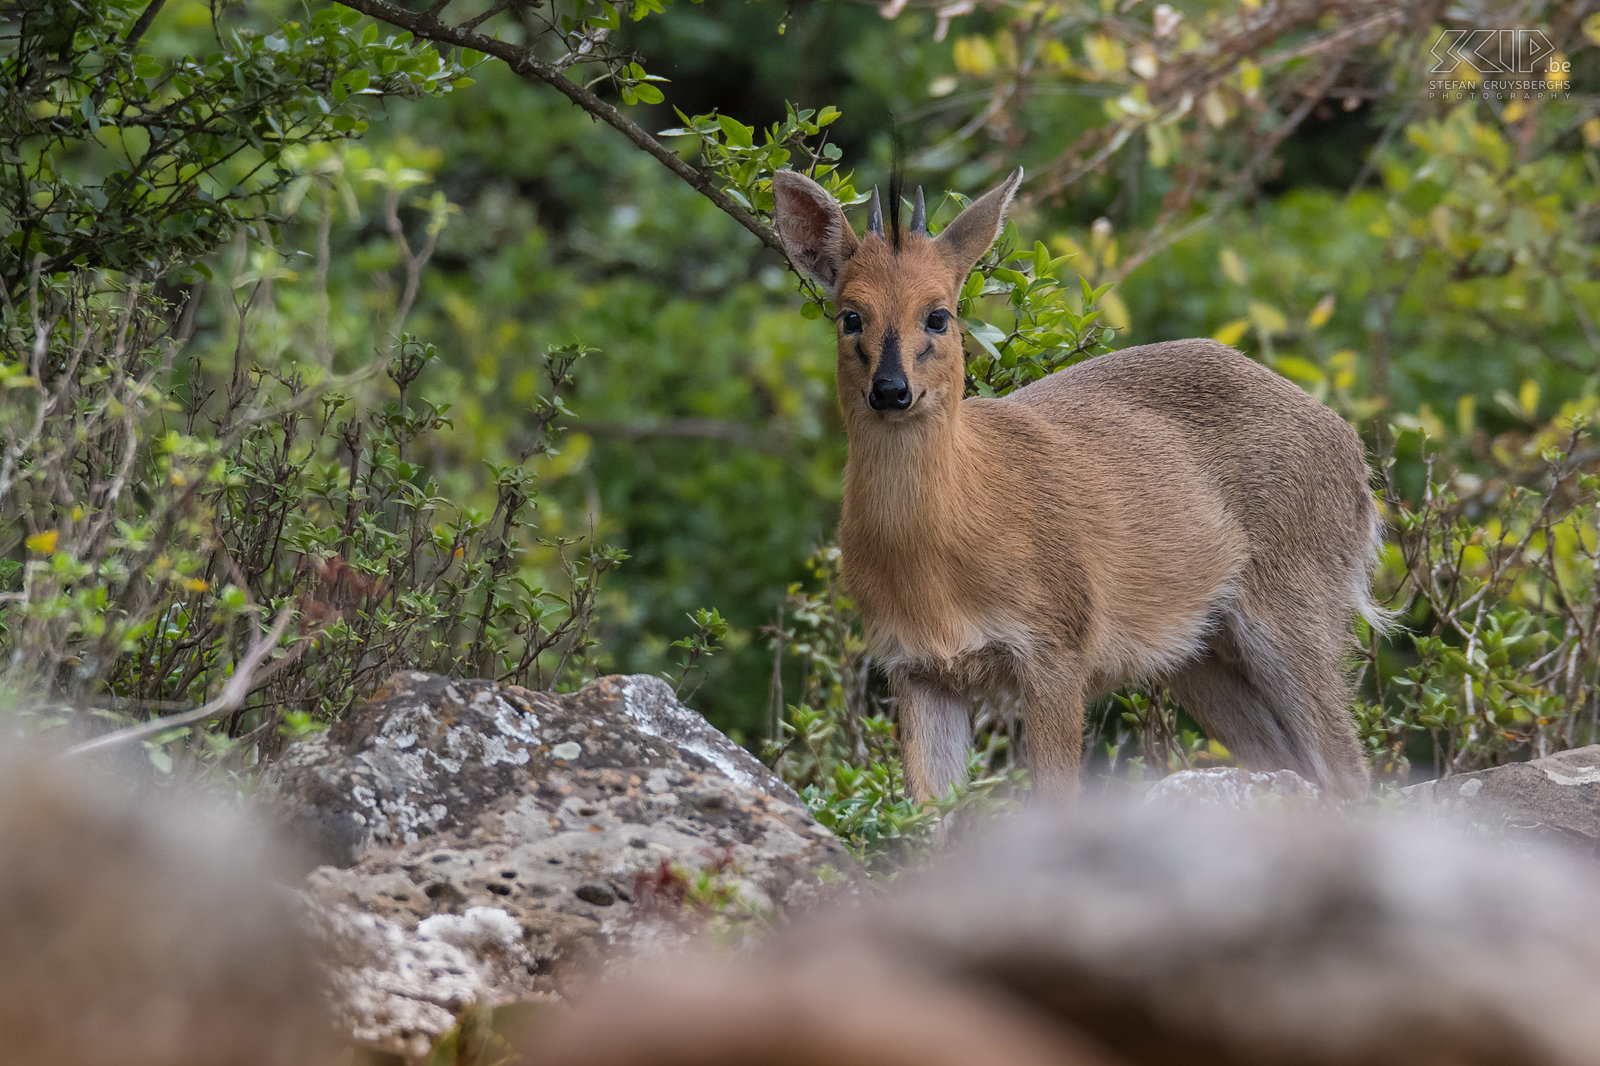 Debre Libanos - Klipspringer De klipspringer (Oreotragus oreotragus) is een kleine Afrikaanse antilope die enkel leeft in rotsachtige streken. Het zijn uitstekende klimmers en springers.  Stefan Cruysberghs